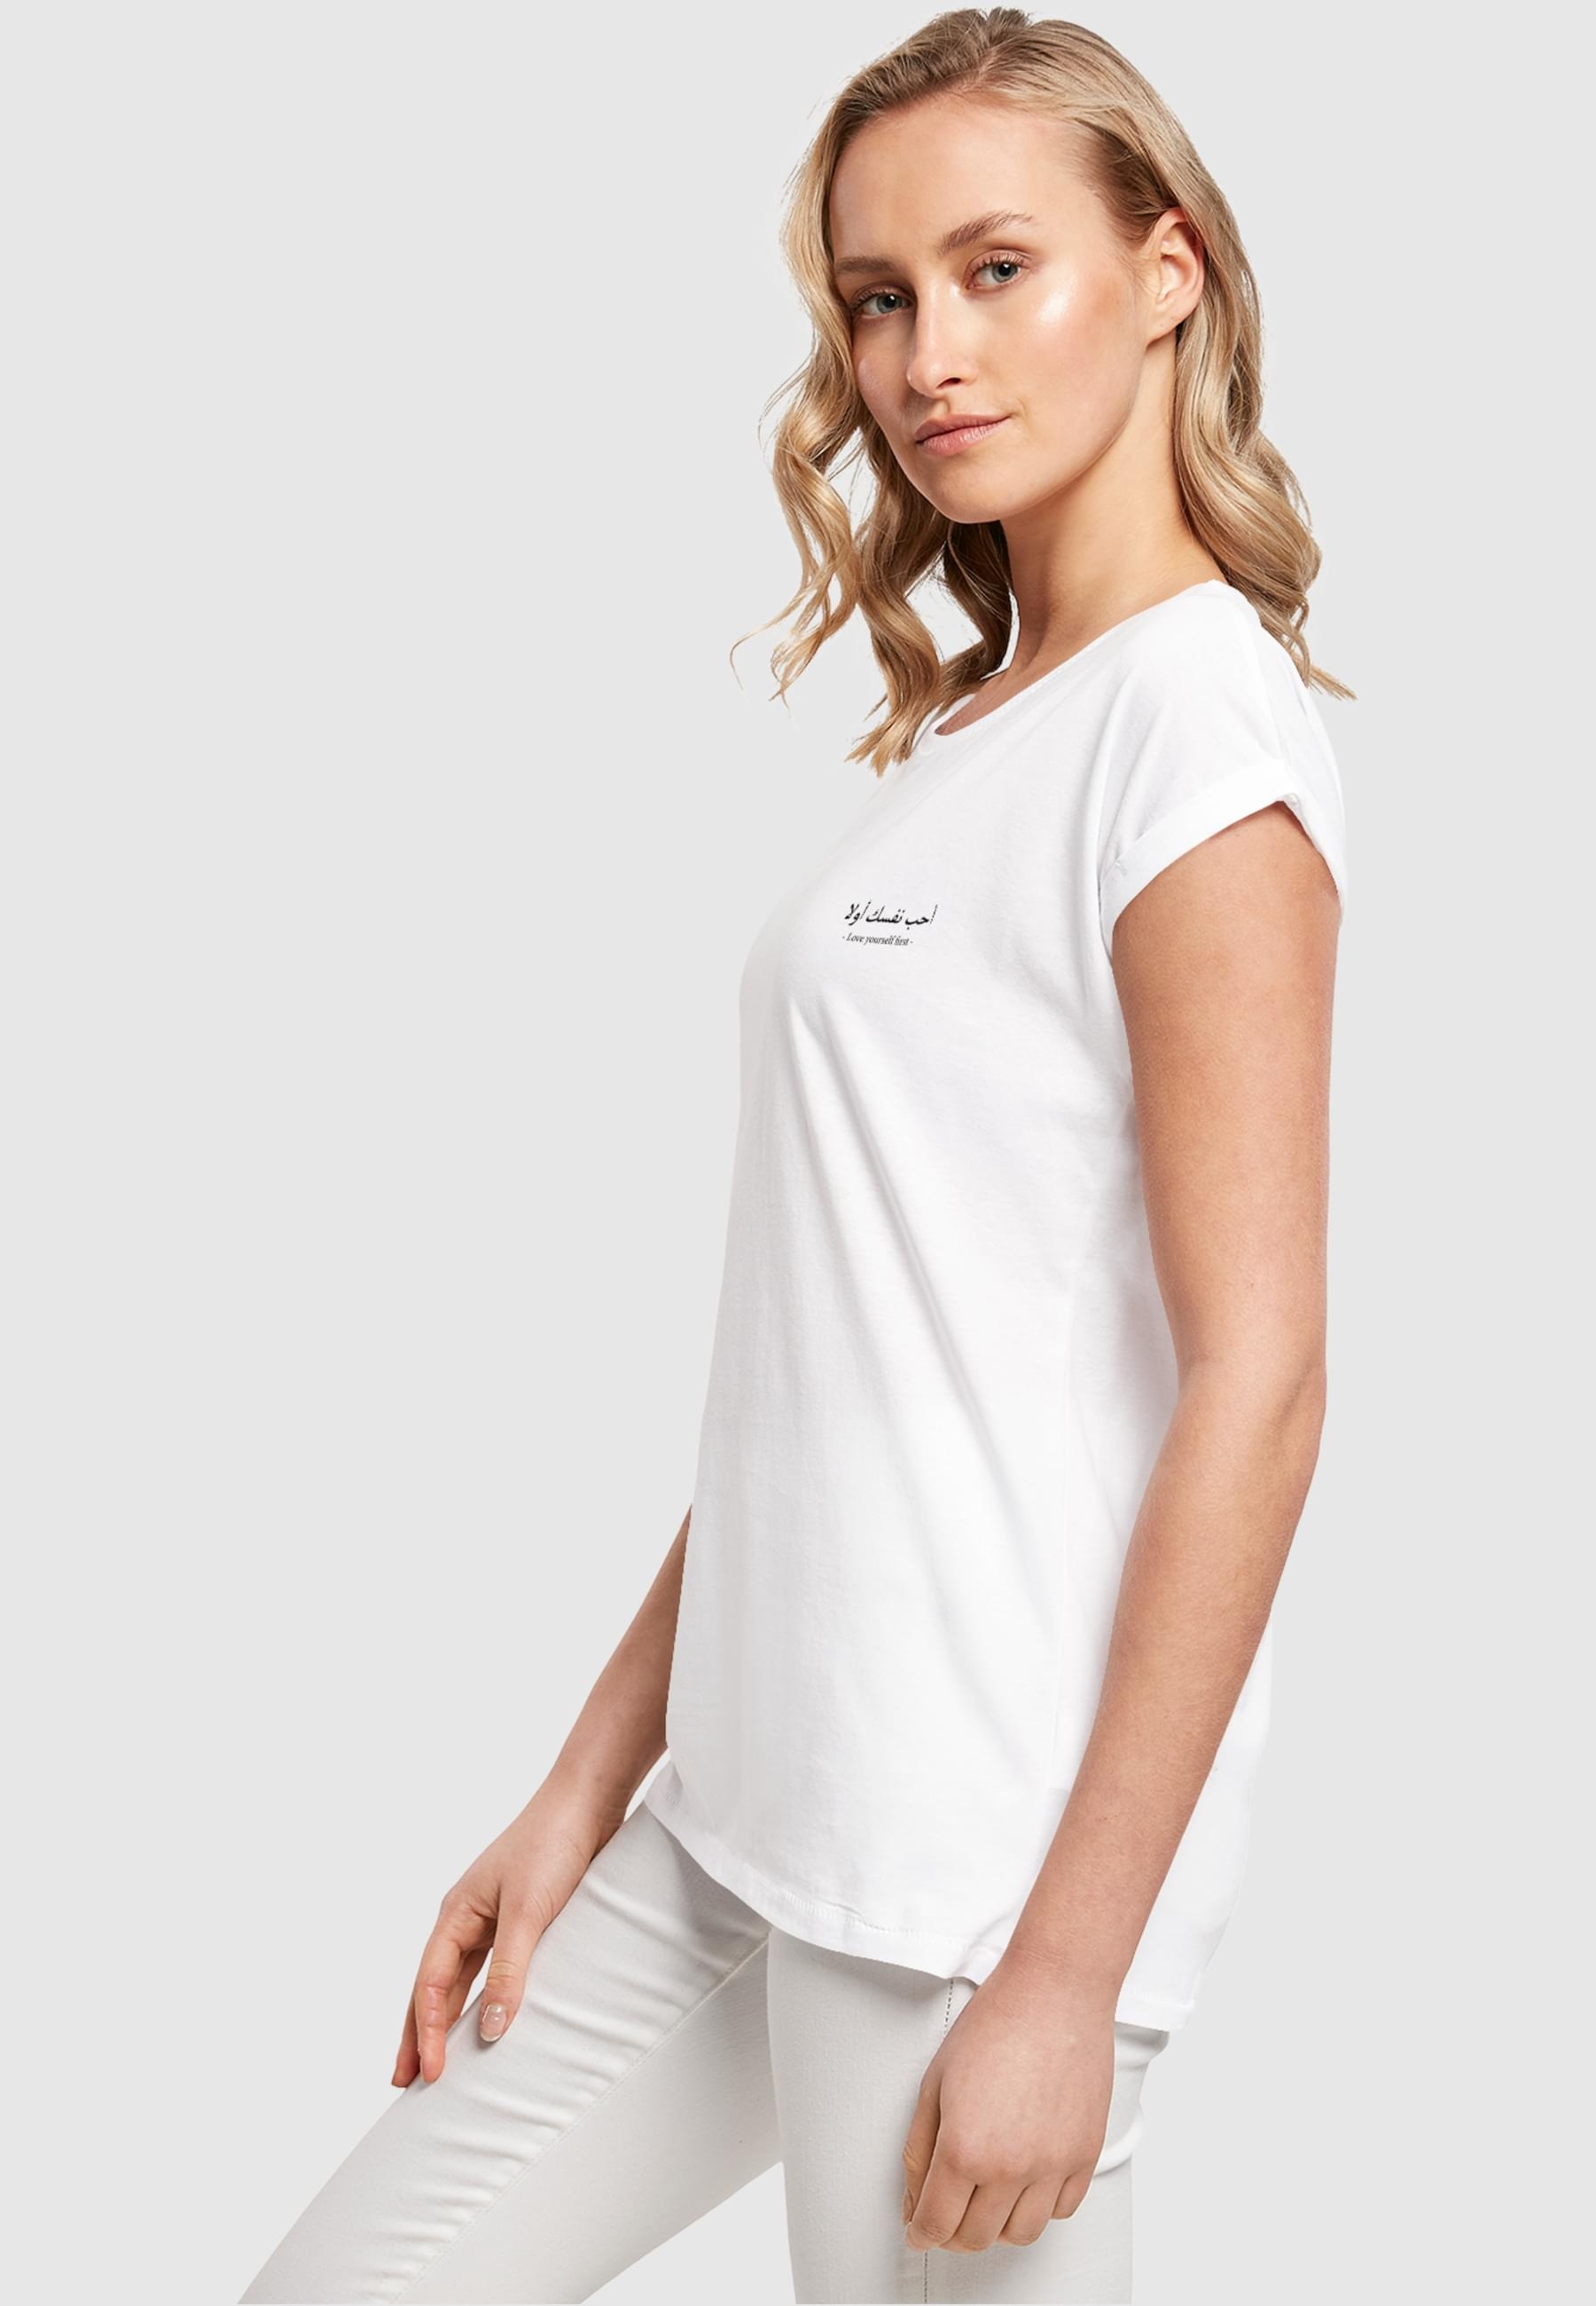 Merchcode T-Shirt »Merchcode Damen Ladies Love Yourself First Extended Shoulder Tee«, (1 tlg.)